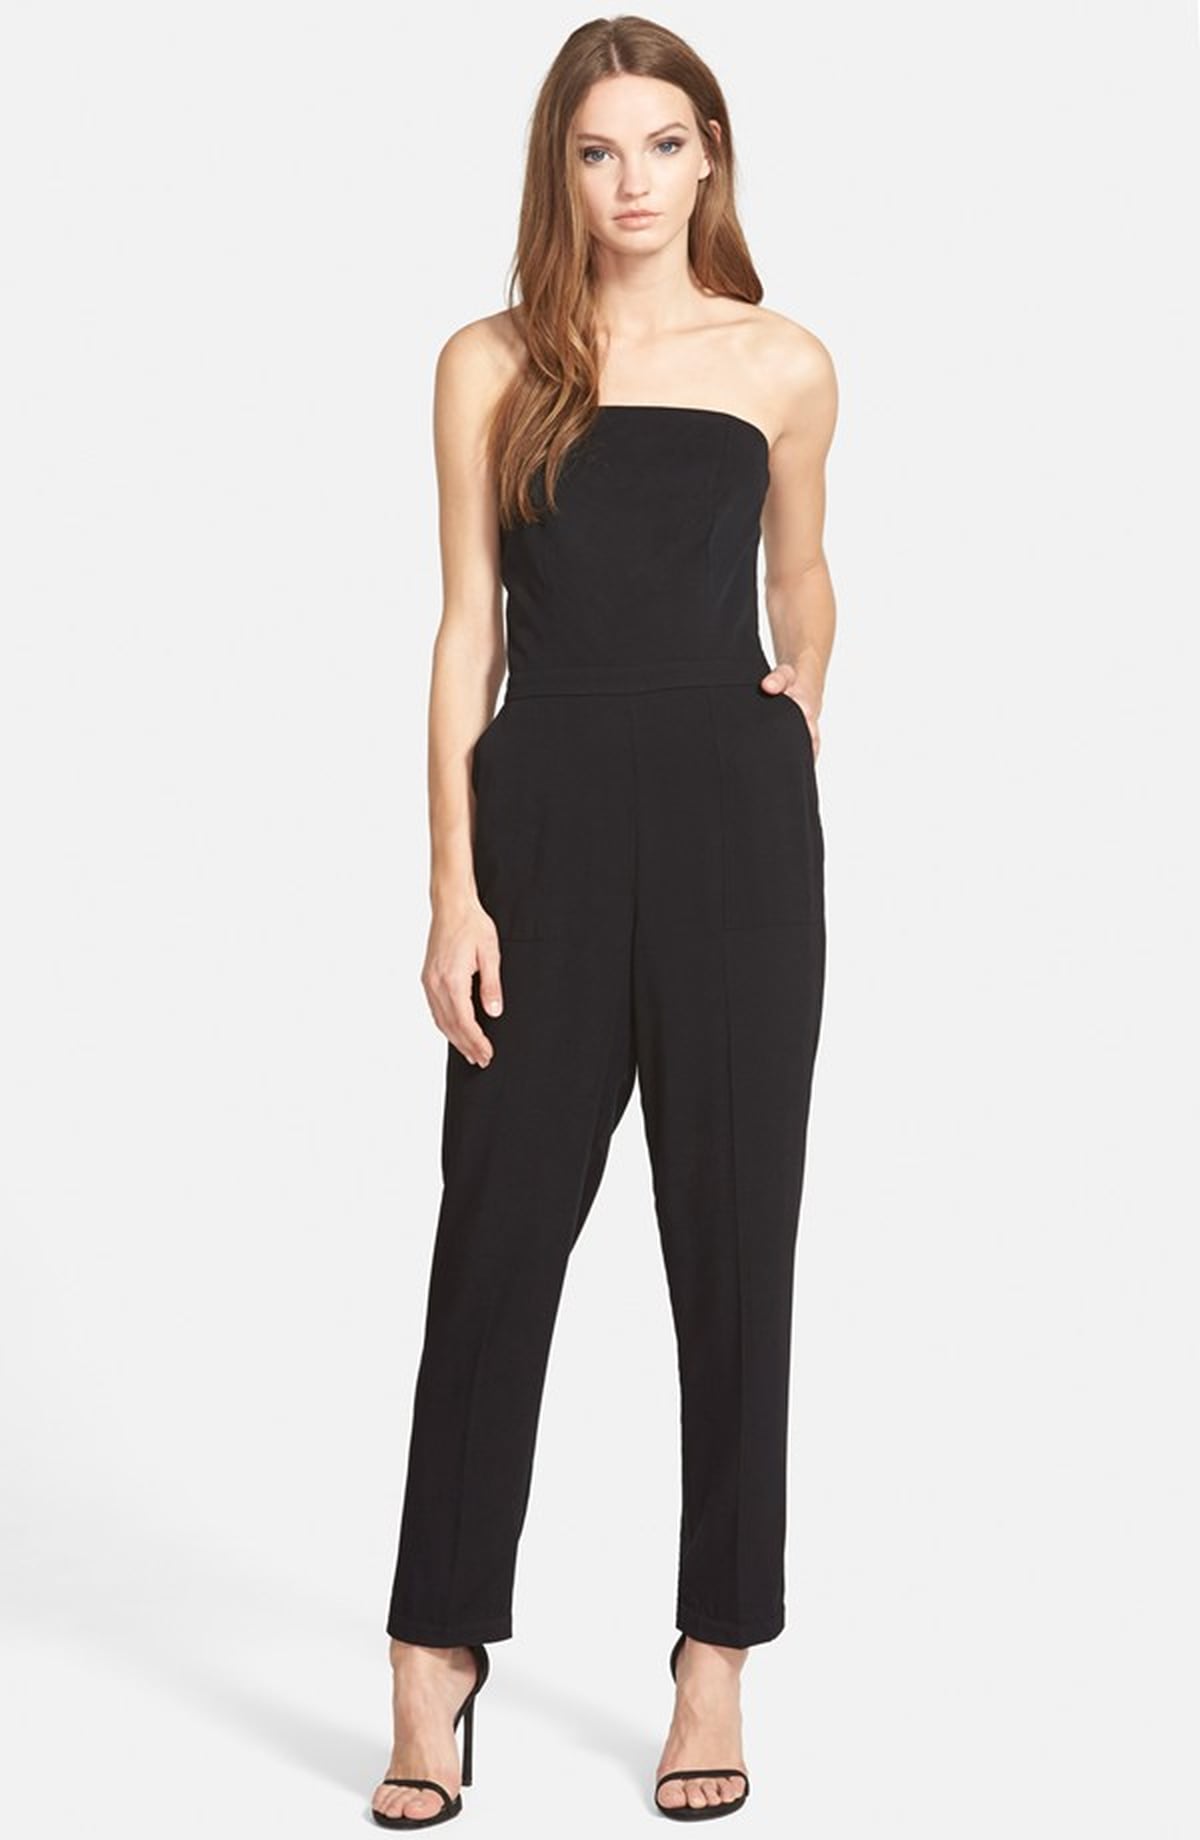 Caitlyn Jenner Wearing Black Jumpsuit | POPSUGAR Fashion